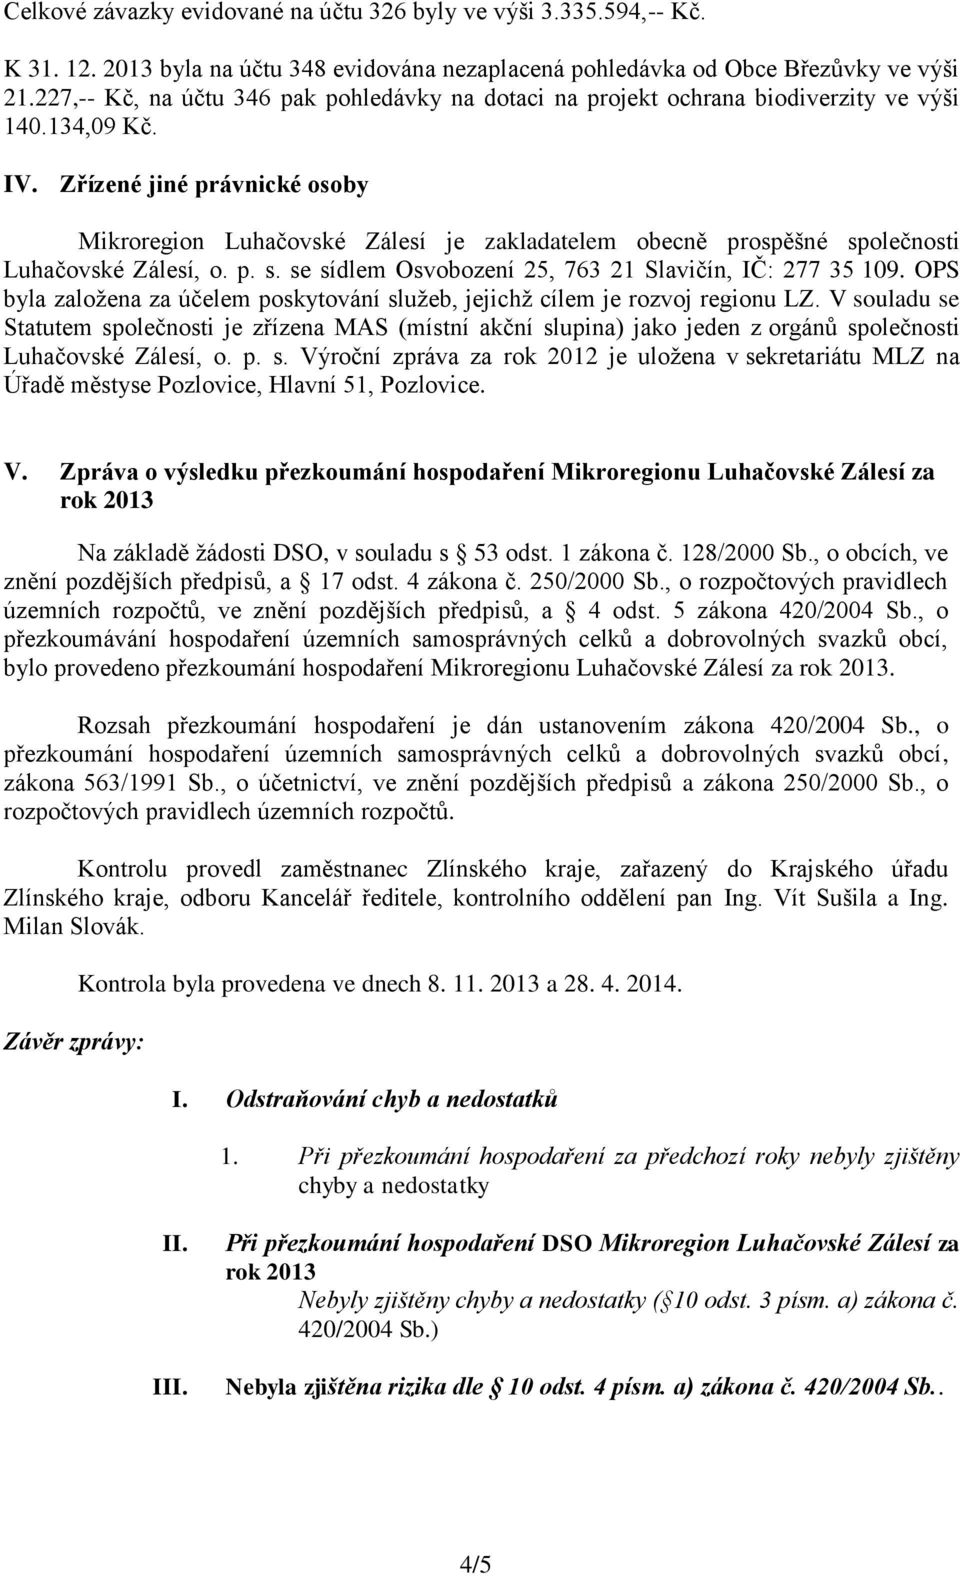 Zřízené jiné právnické osoby Mikroregion Luhačovské Zálesí je zakladatelem obecně prospěšné společnosti Luhačovské Zálesí, o. p. s. se sídlem Osvobození 25, 763 21 Slavičín, IČ: 277 35 109.